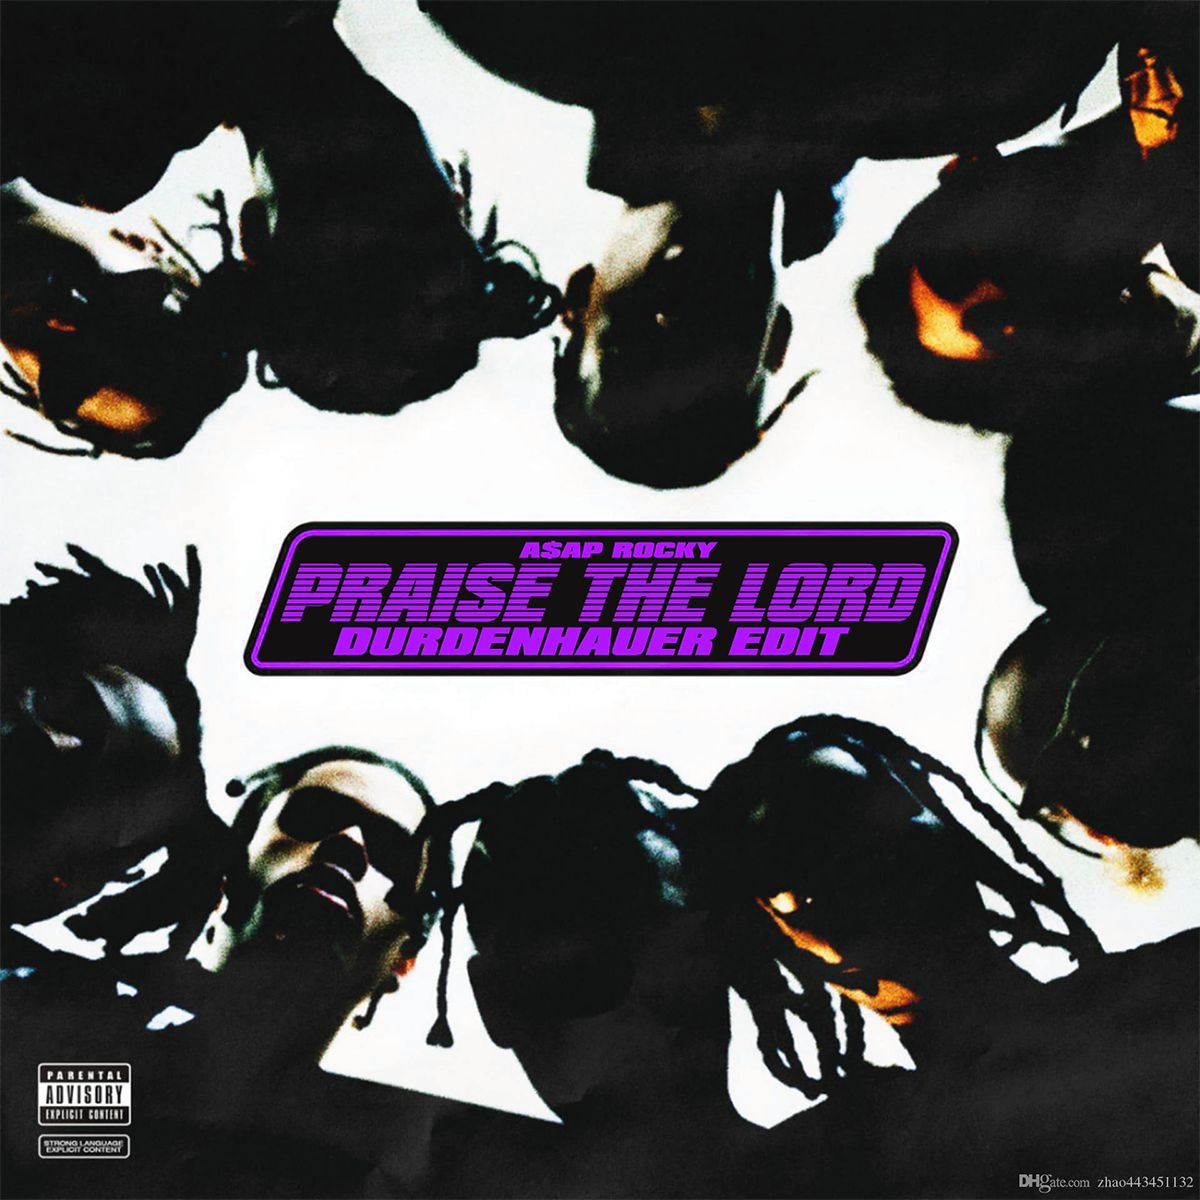 אראפקאפיע A$AP ROCKY - Praise the Lord (DURDENHAUER Edit) [FREE DOWNLOAD]